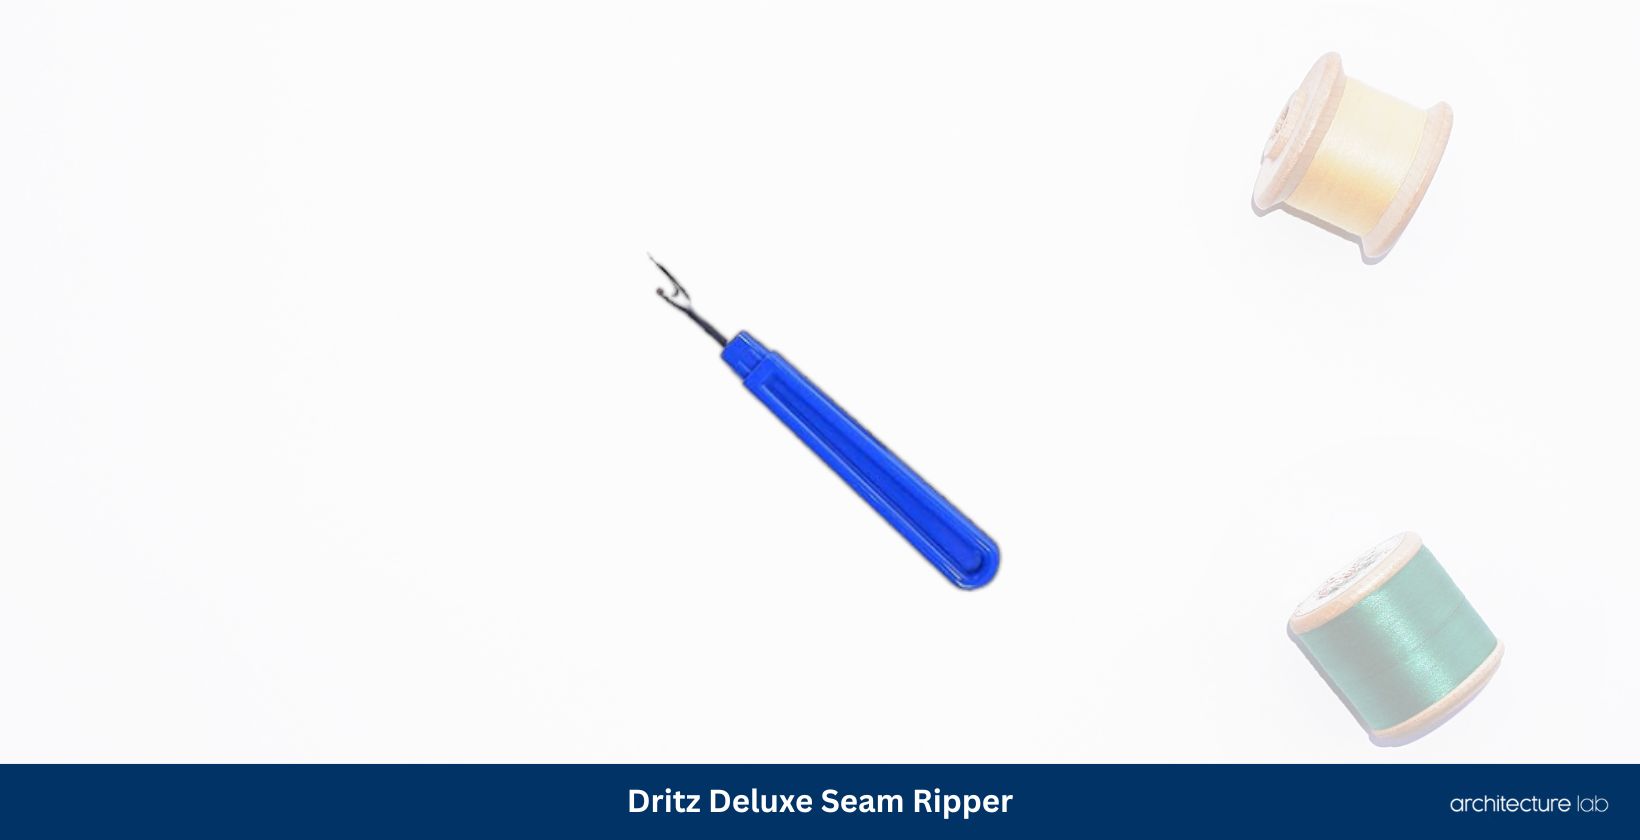 Dritz Deluxe Seam Ripper